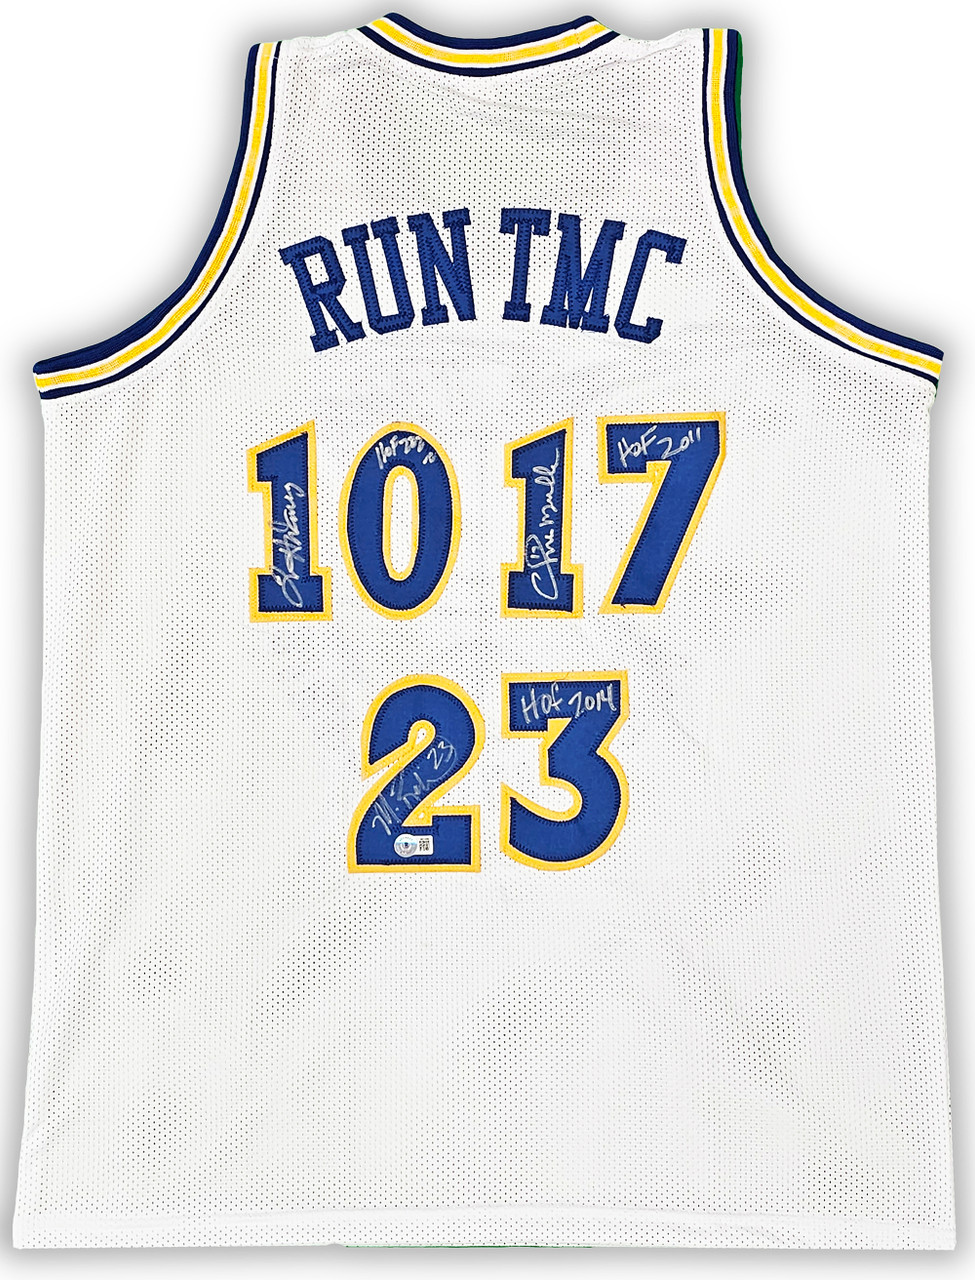 Golden State Warriors Chris Mullin, Tim Hardaway & Mitch Richmond  Autographed Dark Blue Jersey Run TMC HOF Beckett BAS Witness Stock #216820